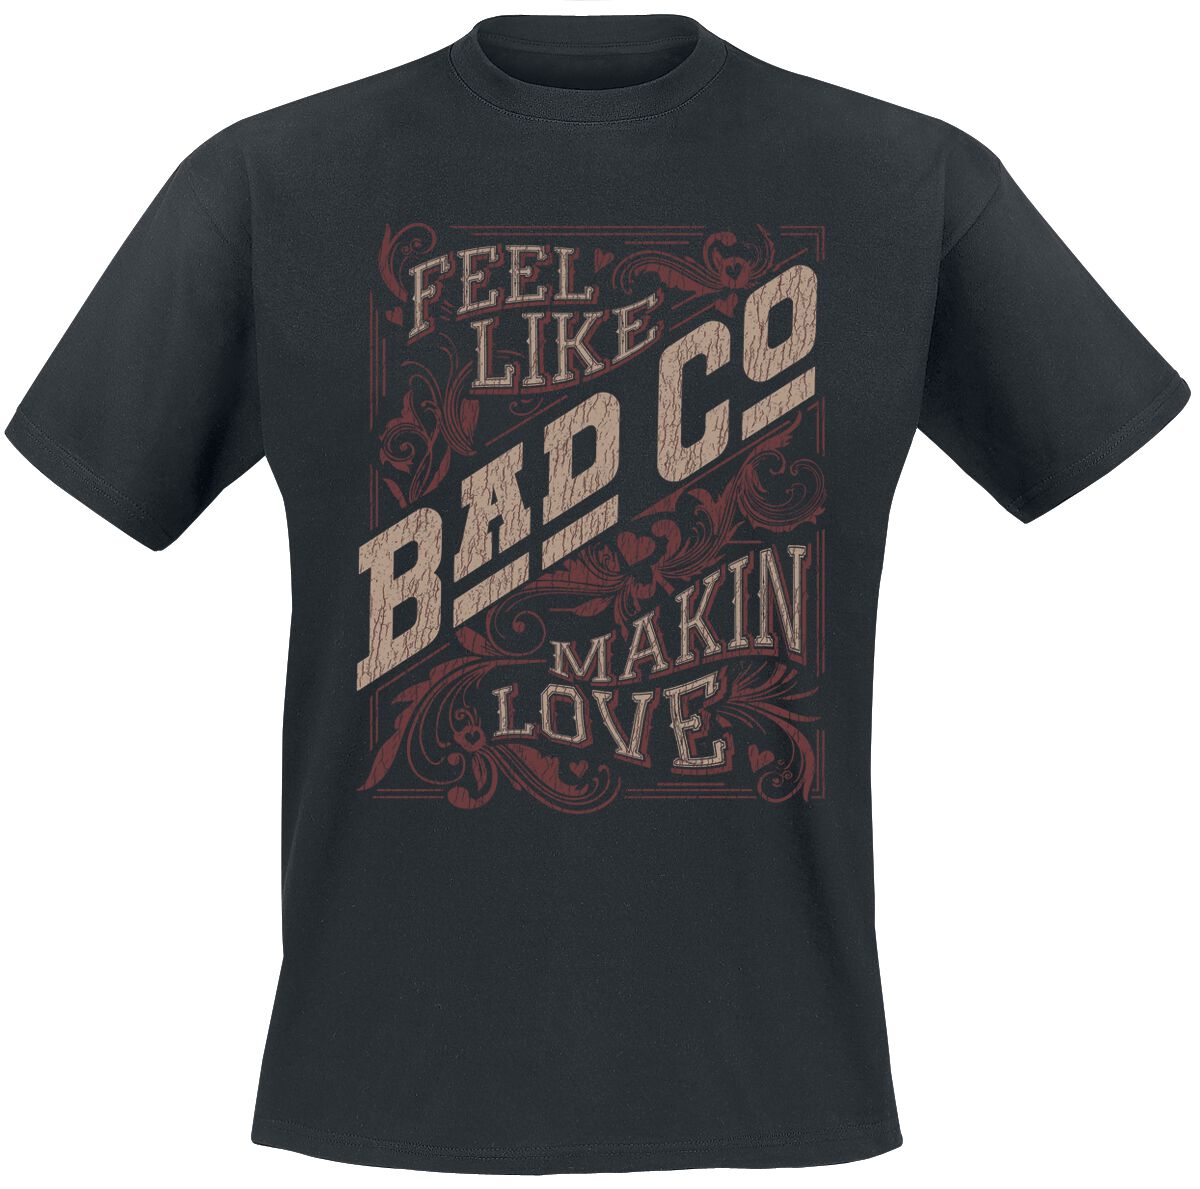 Bad Company T-Shirt - Makin Love - S bis XXL - für Männer - Größe L - schwarz  - EMP exklusives Merchandise!